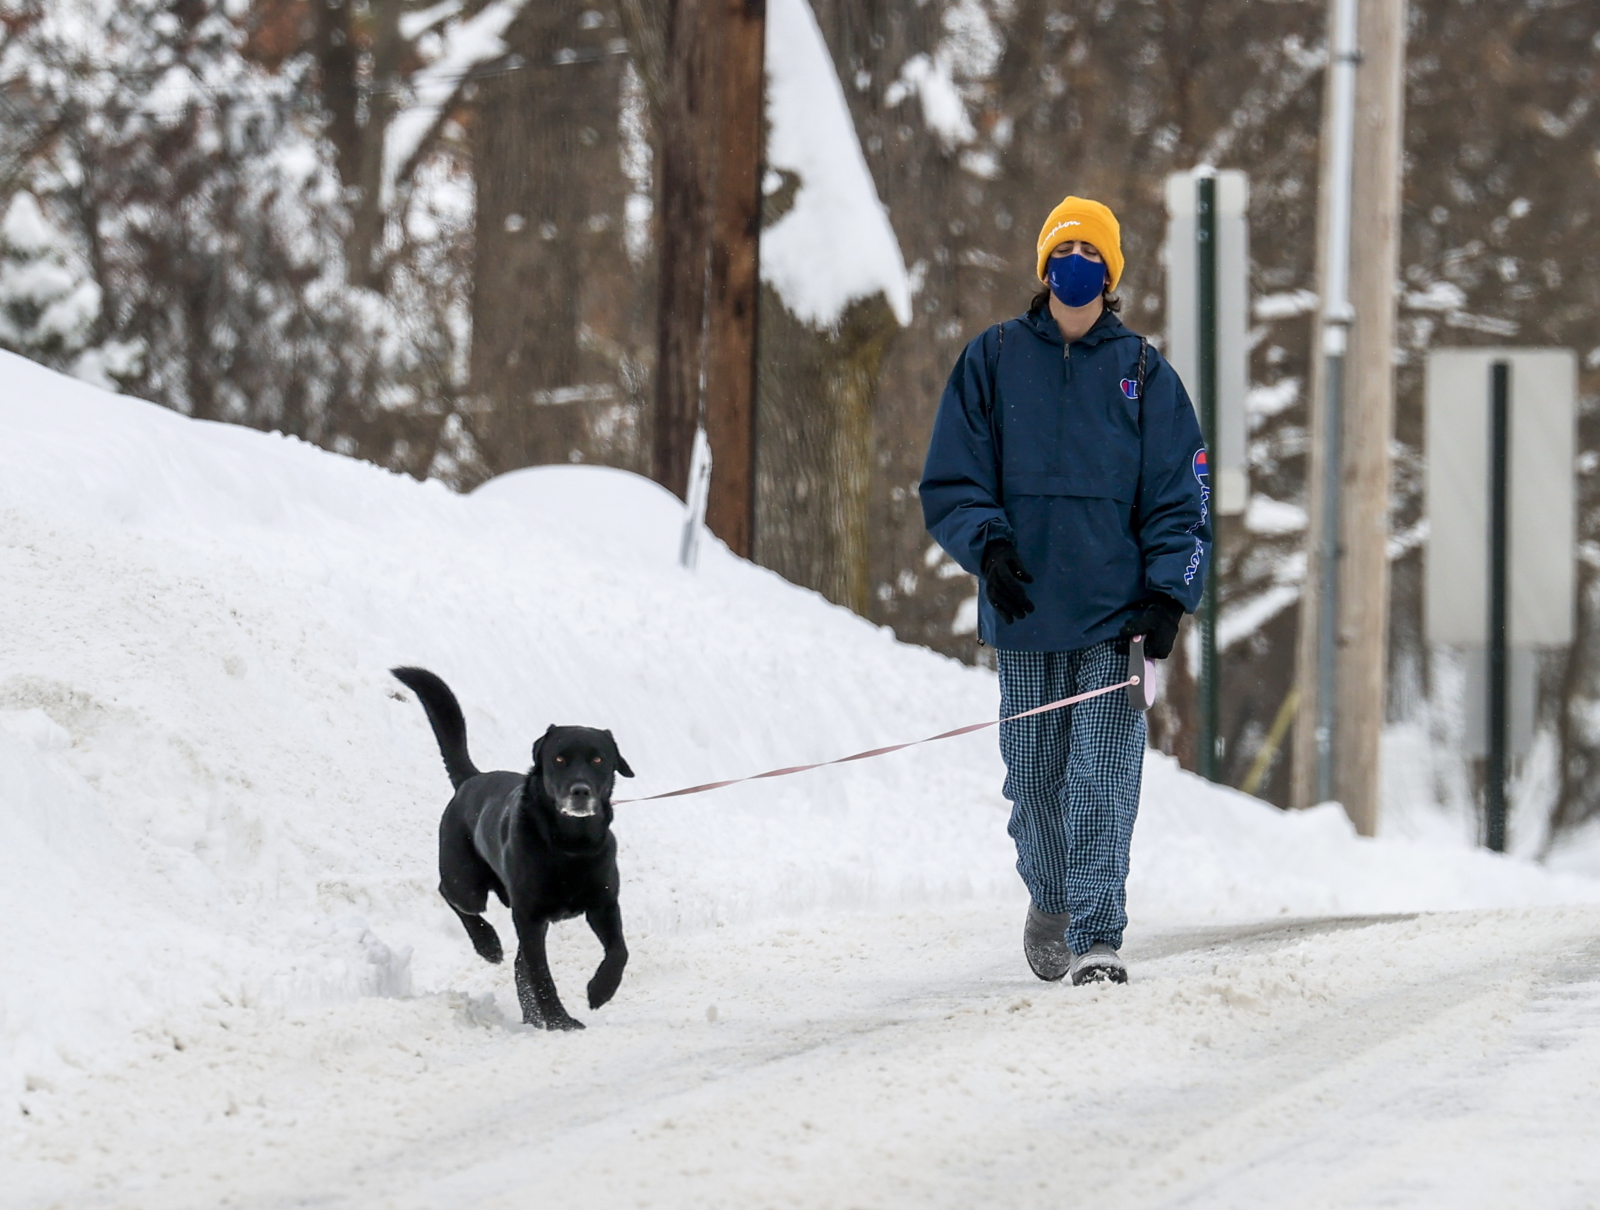 Zimowy spacer z psem fot. EPA/TANNEN MAURY 